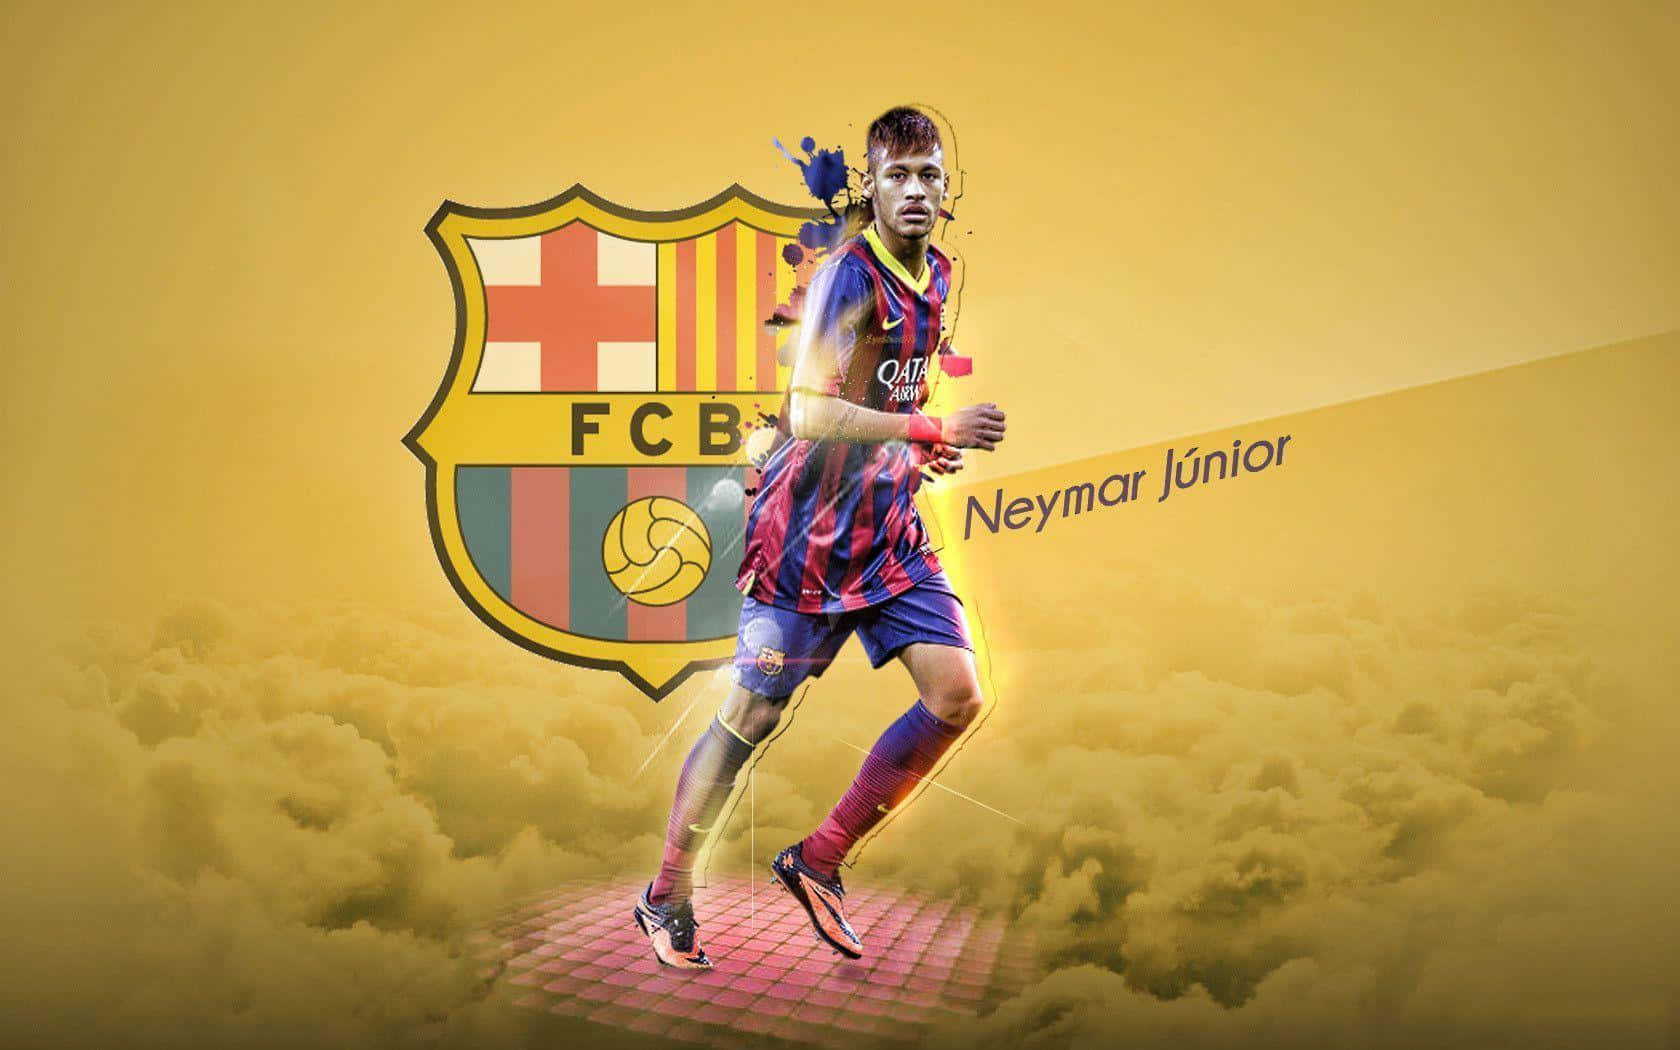 Ilmaestro Di Calcio Neymar In Azione